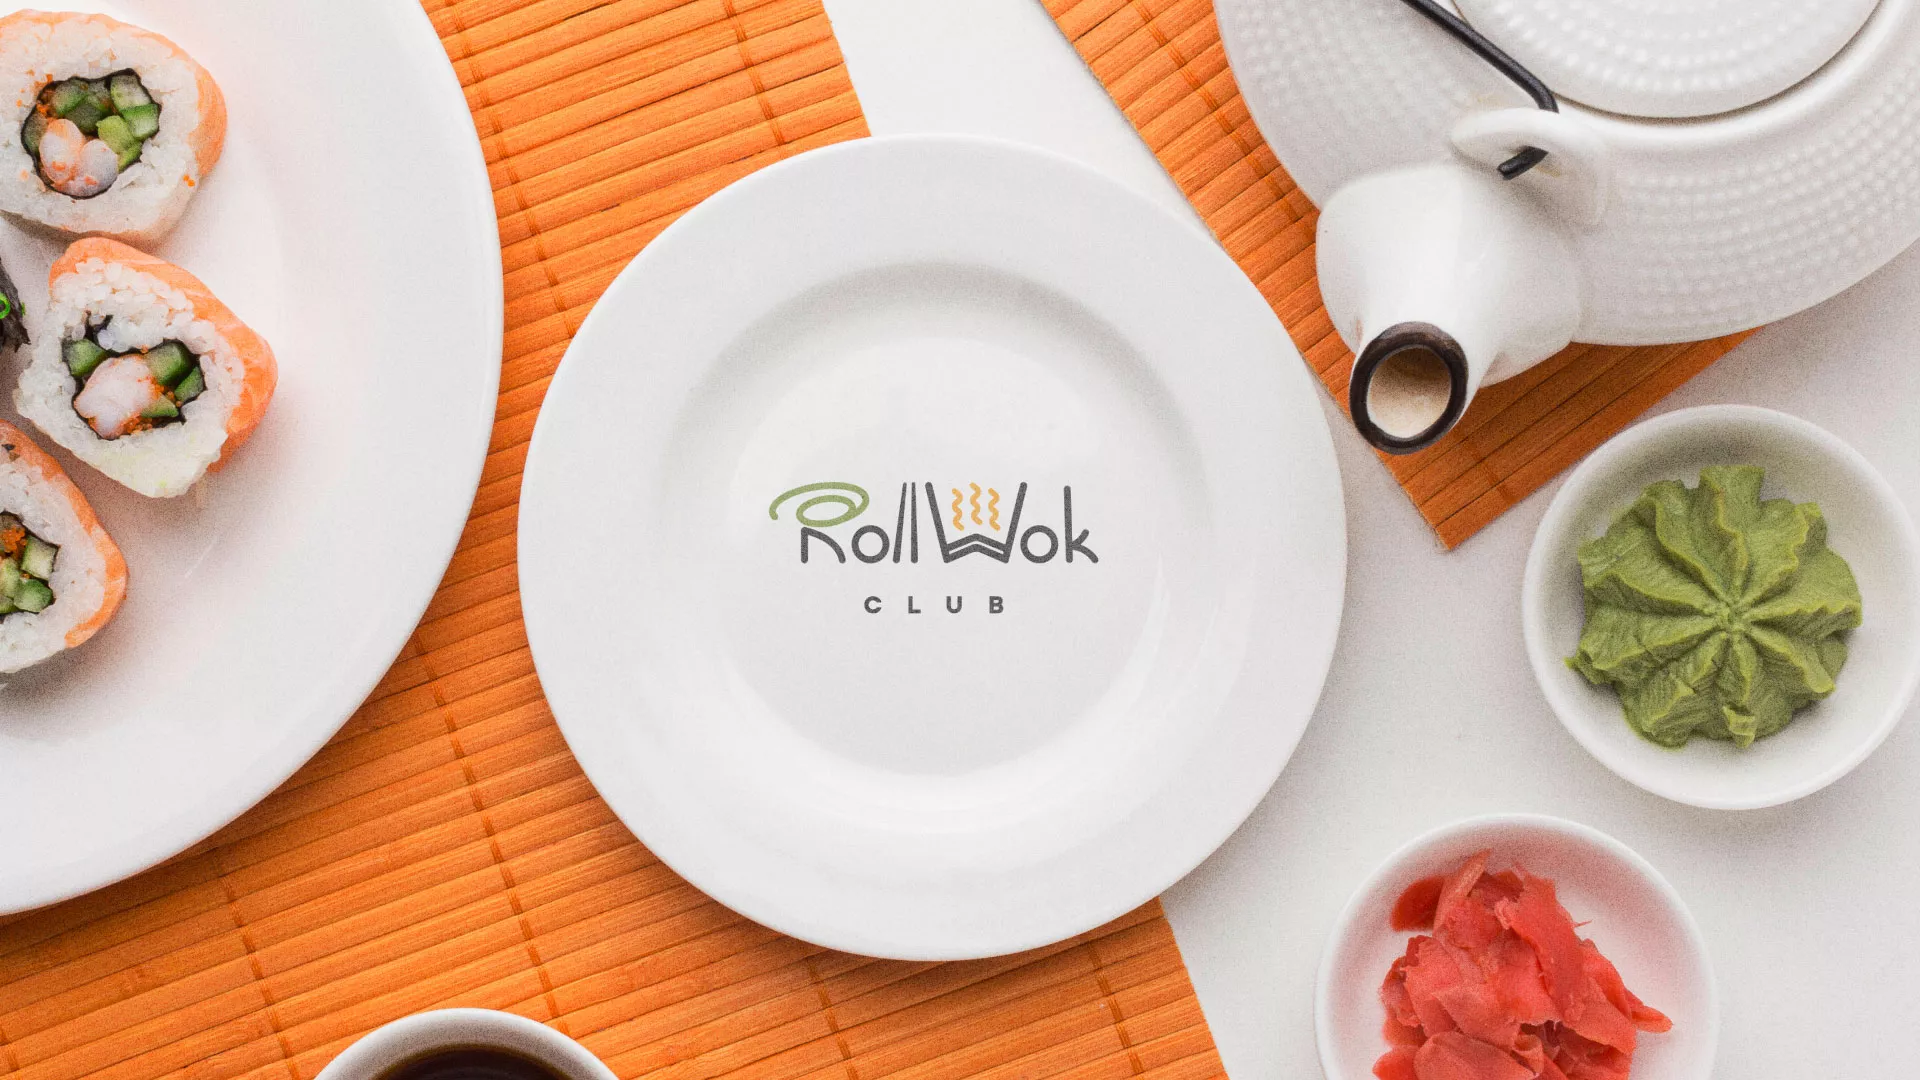 Разработка логотипа и фирменного стиля суши-бара «Roll Wok Club» в Строителе